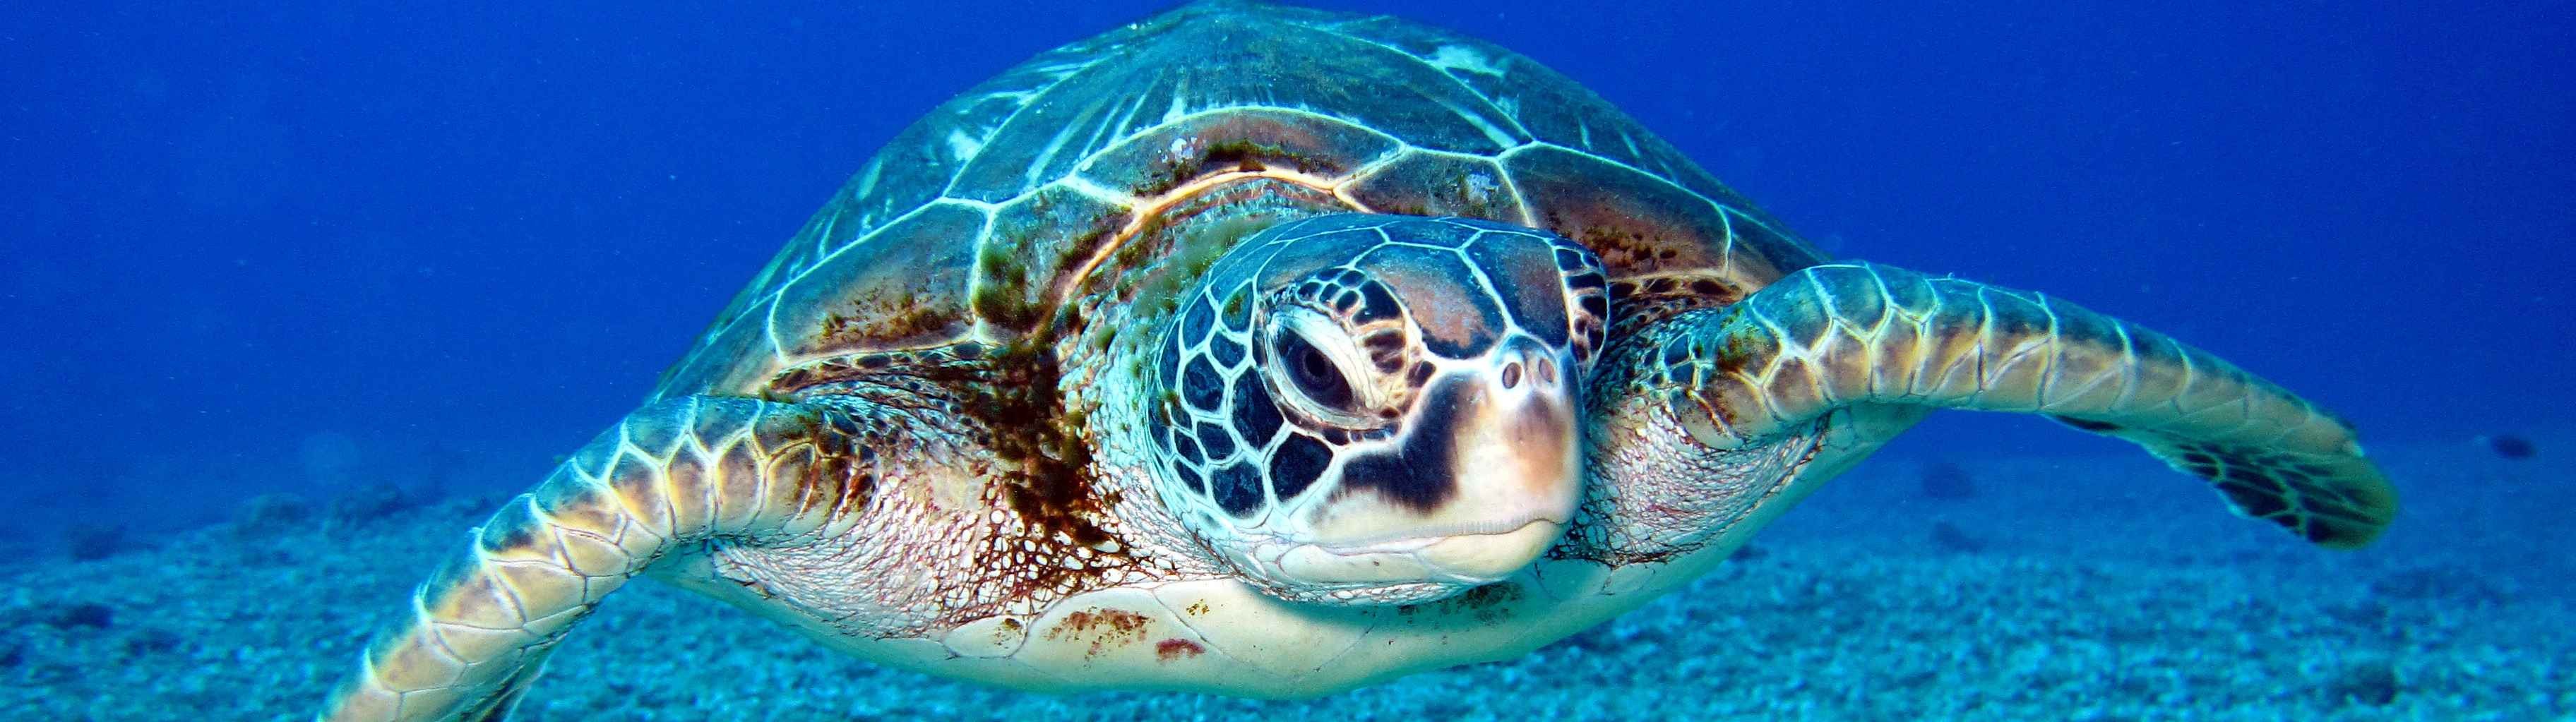 Las tortugas y los reptiles, modelos de estudio del envejecimiento humano